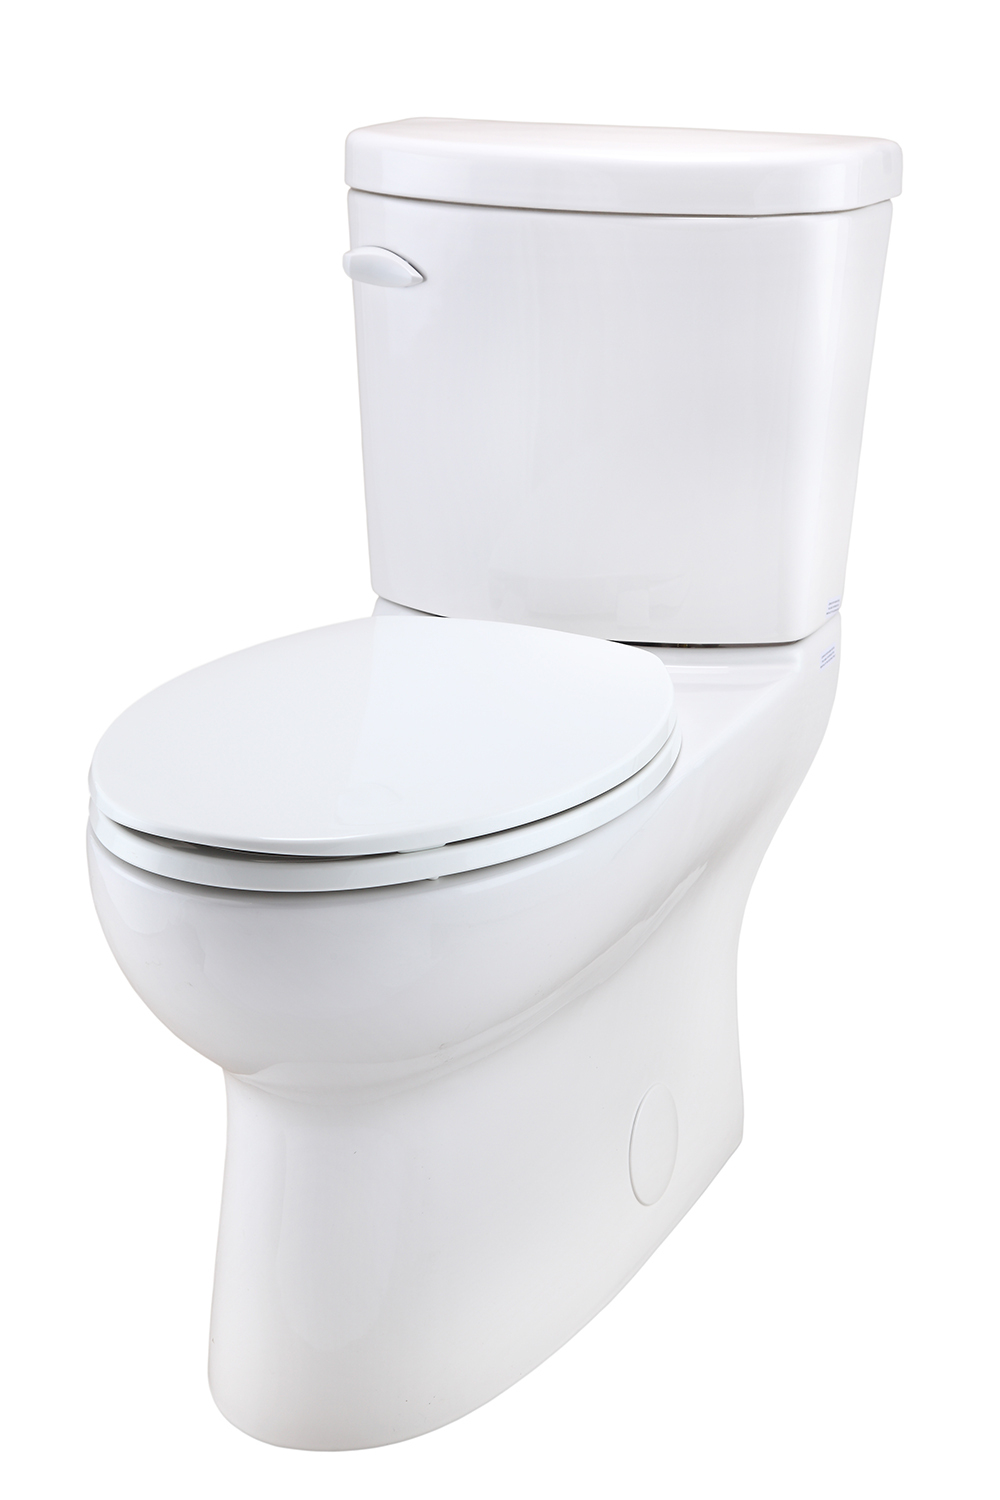 Toilette Avalanche 2 Pièces - Plomberie Bruno Lapensée dedans Toilette Hors Service